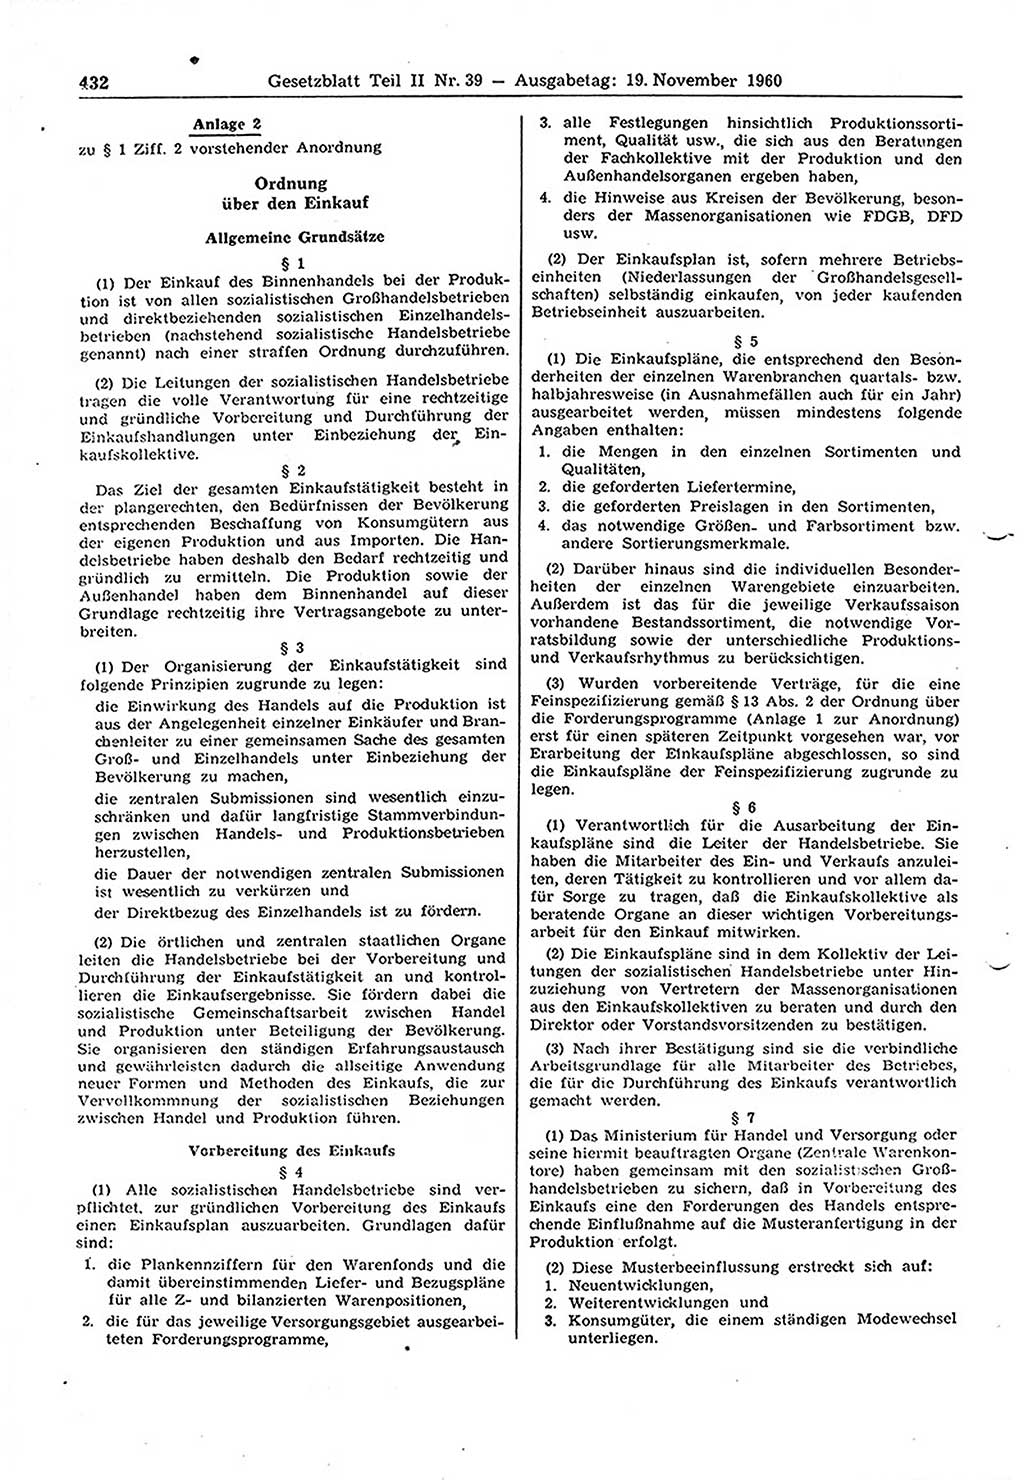 Gesetzblatt (GBl.) der Deutschen Demokratischen Republik (DDR) Teil ⅠⅠ 1960, Seite 432 (GBl. DDR ⅠⅠ 1960, S. 432)